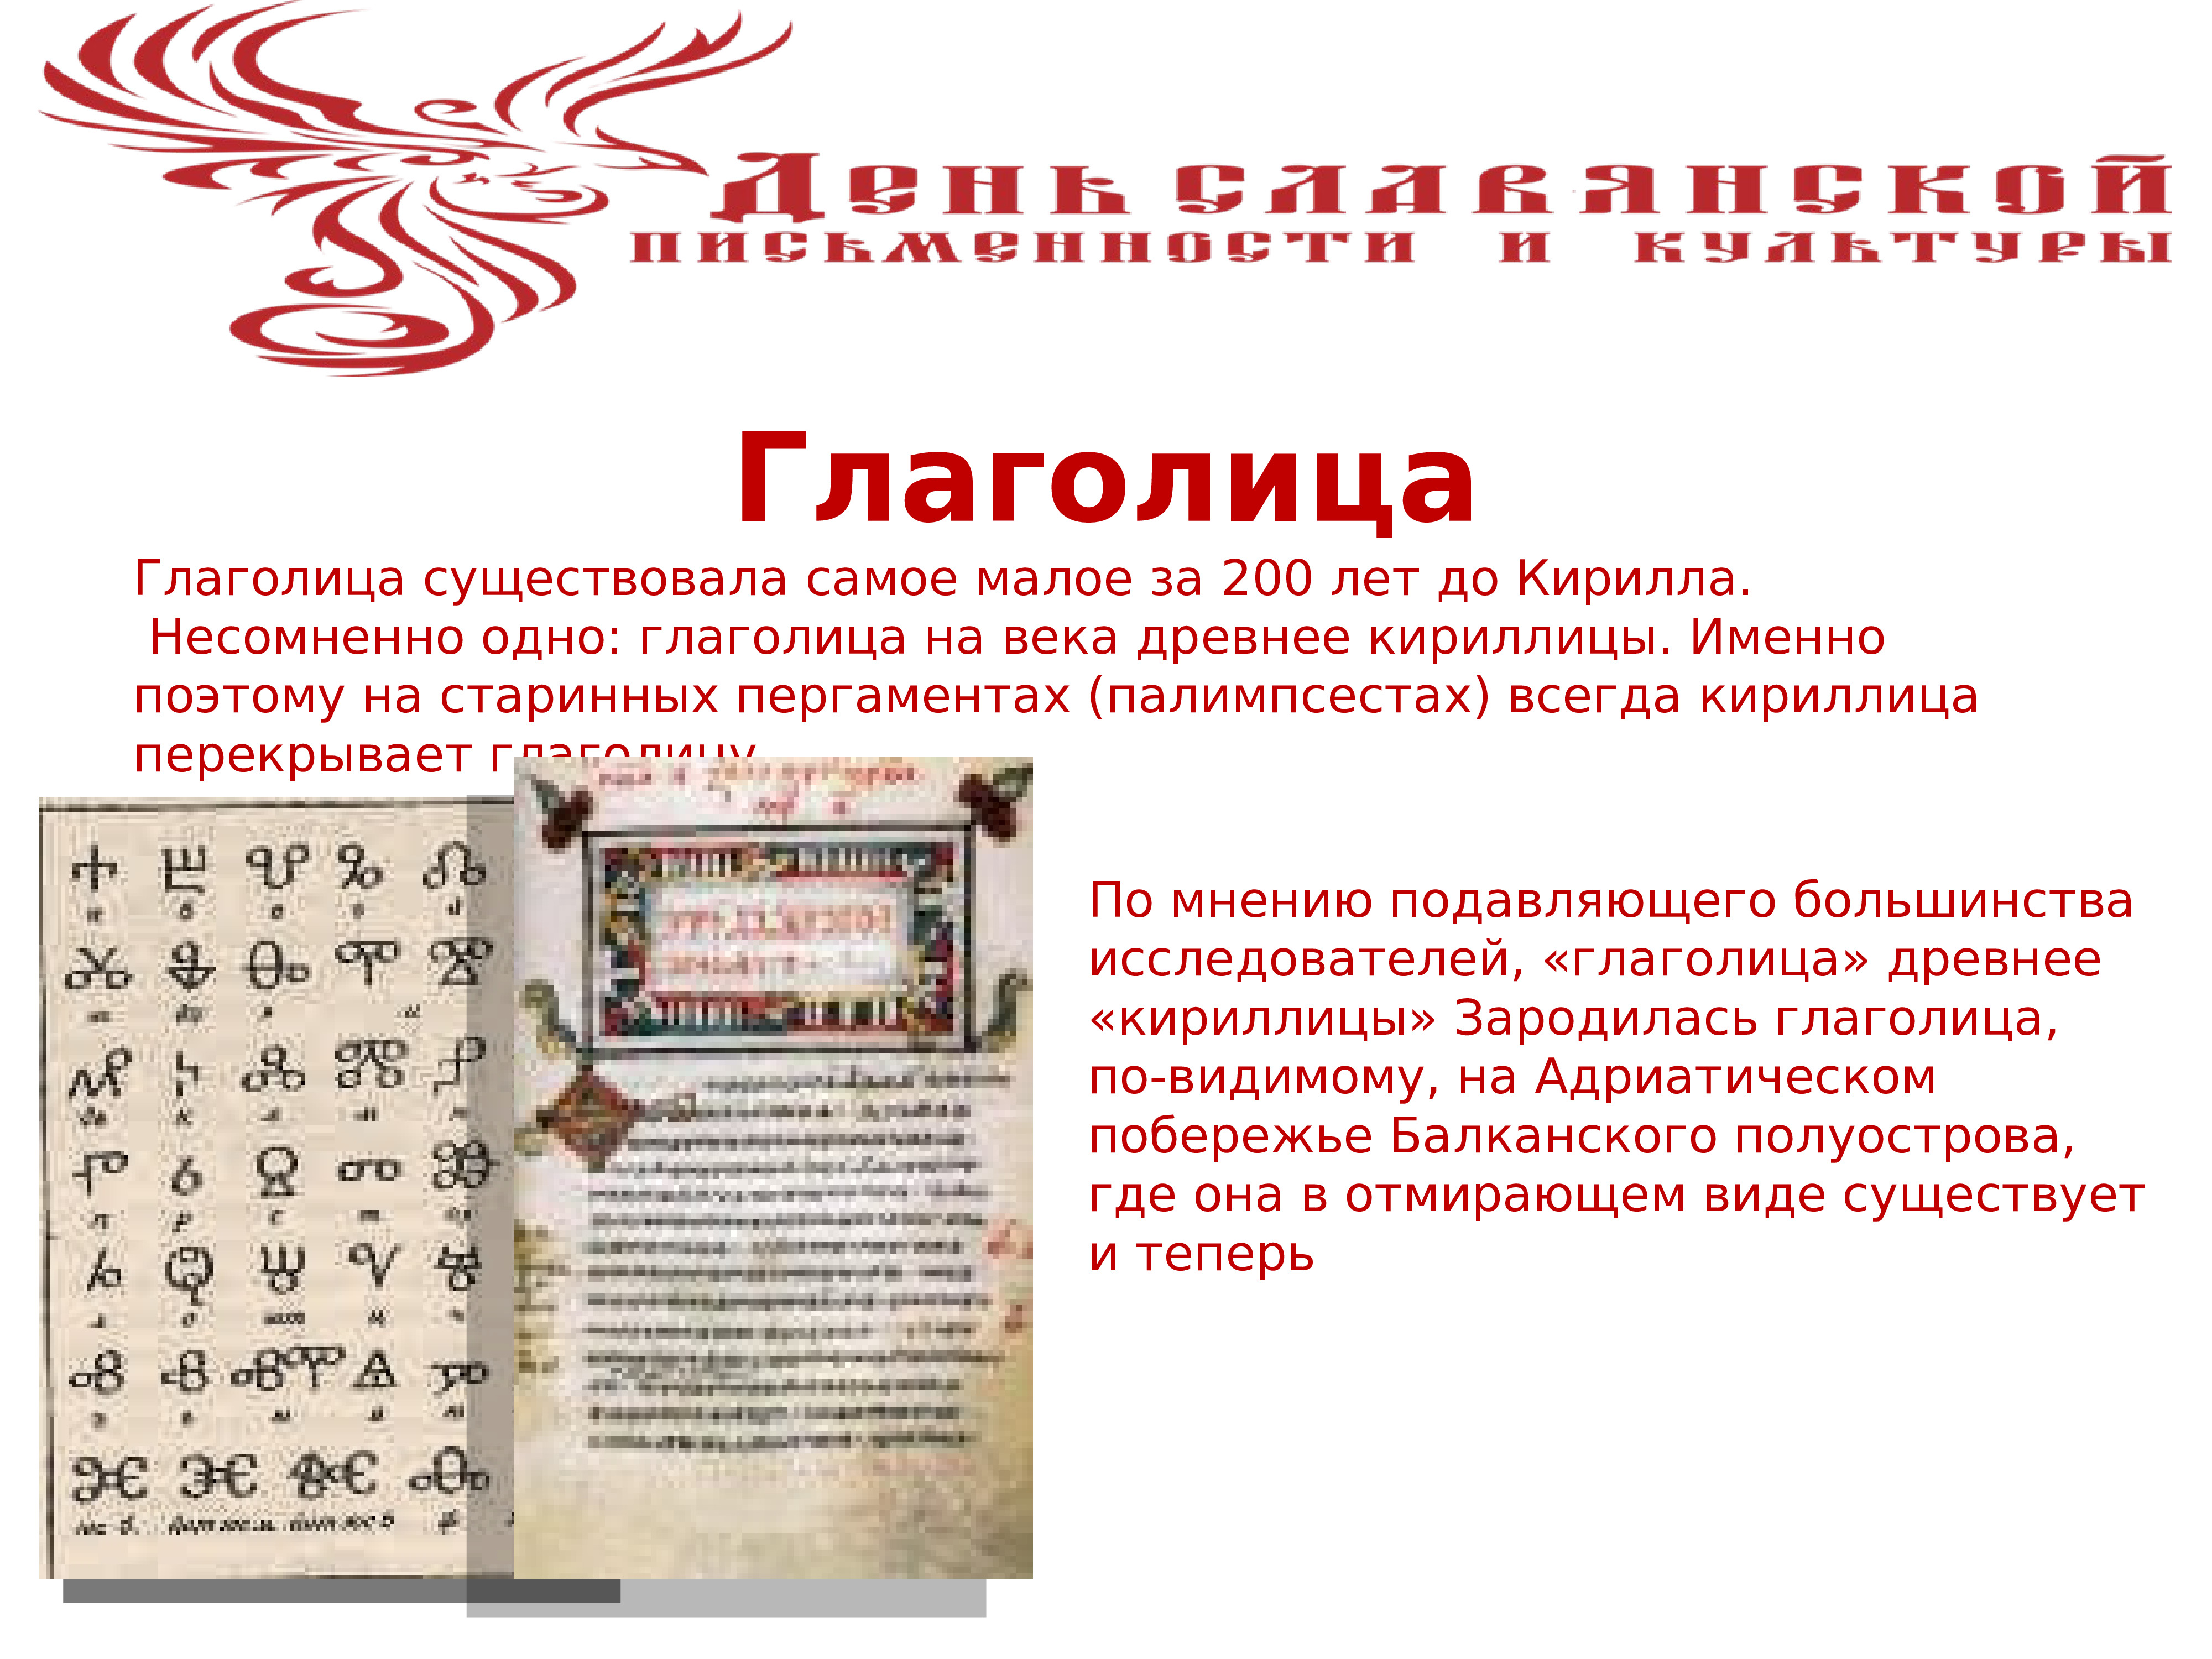 Славянская письменность